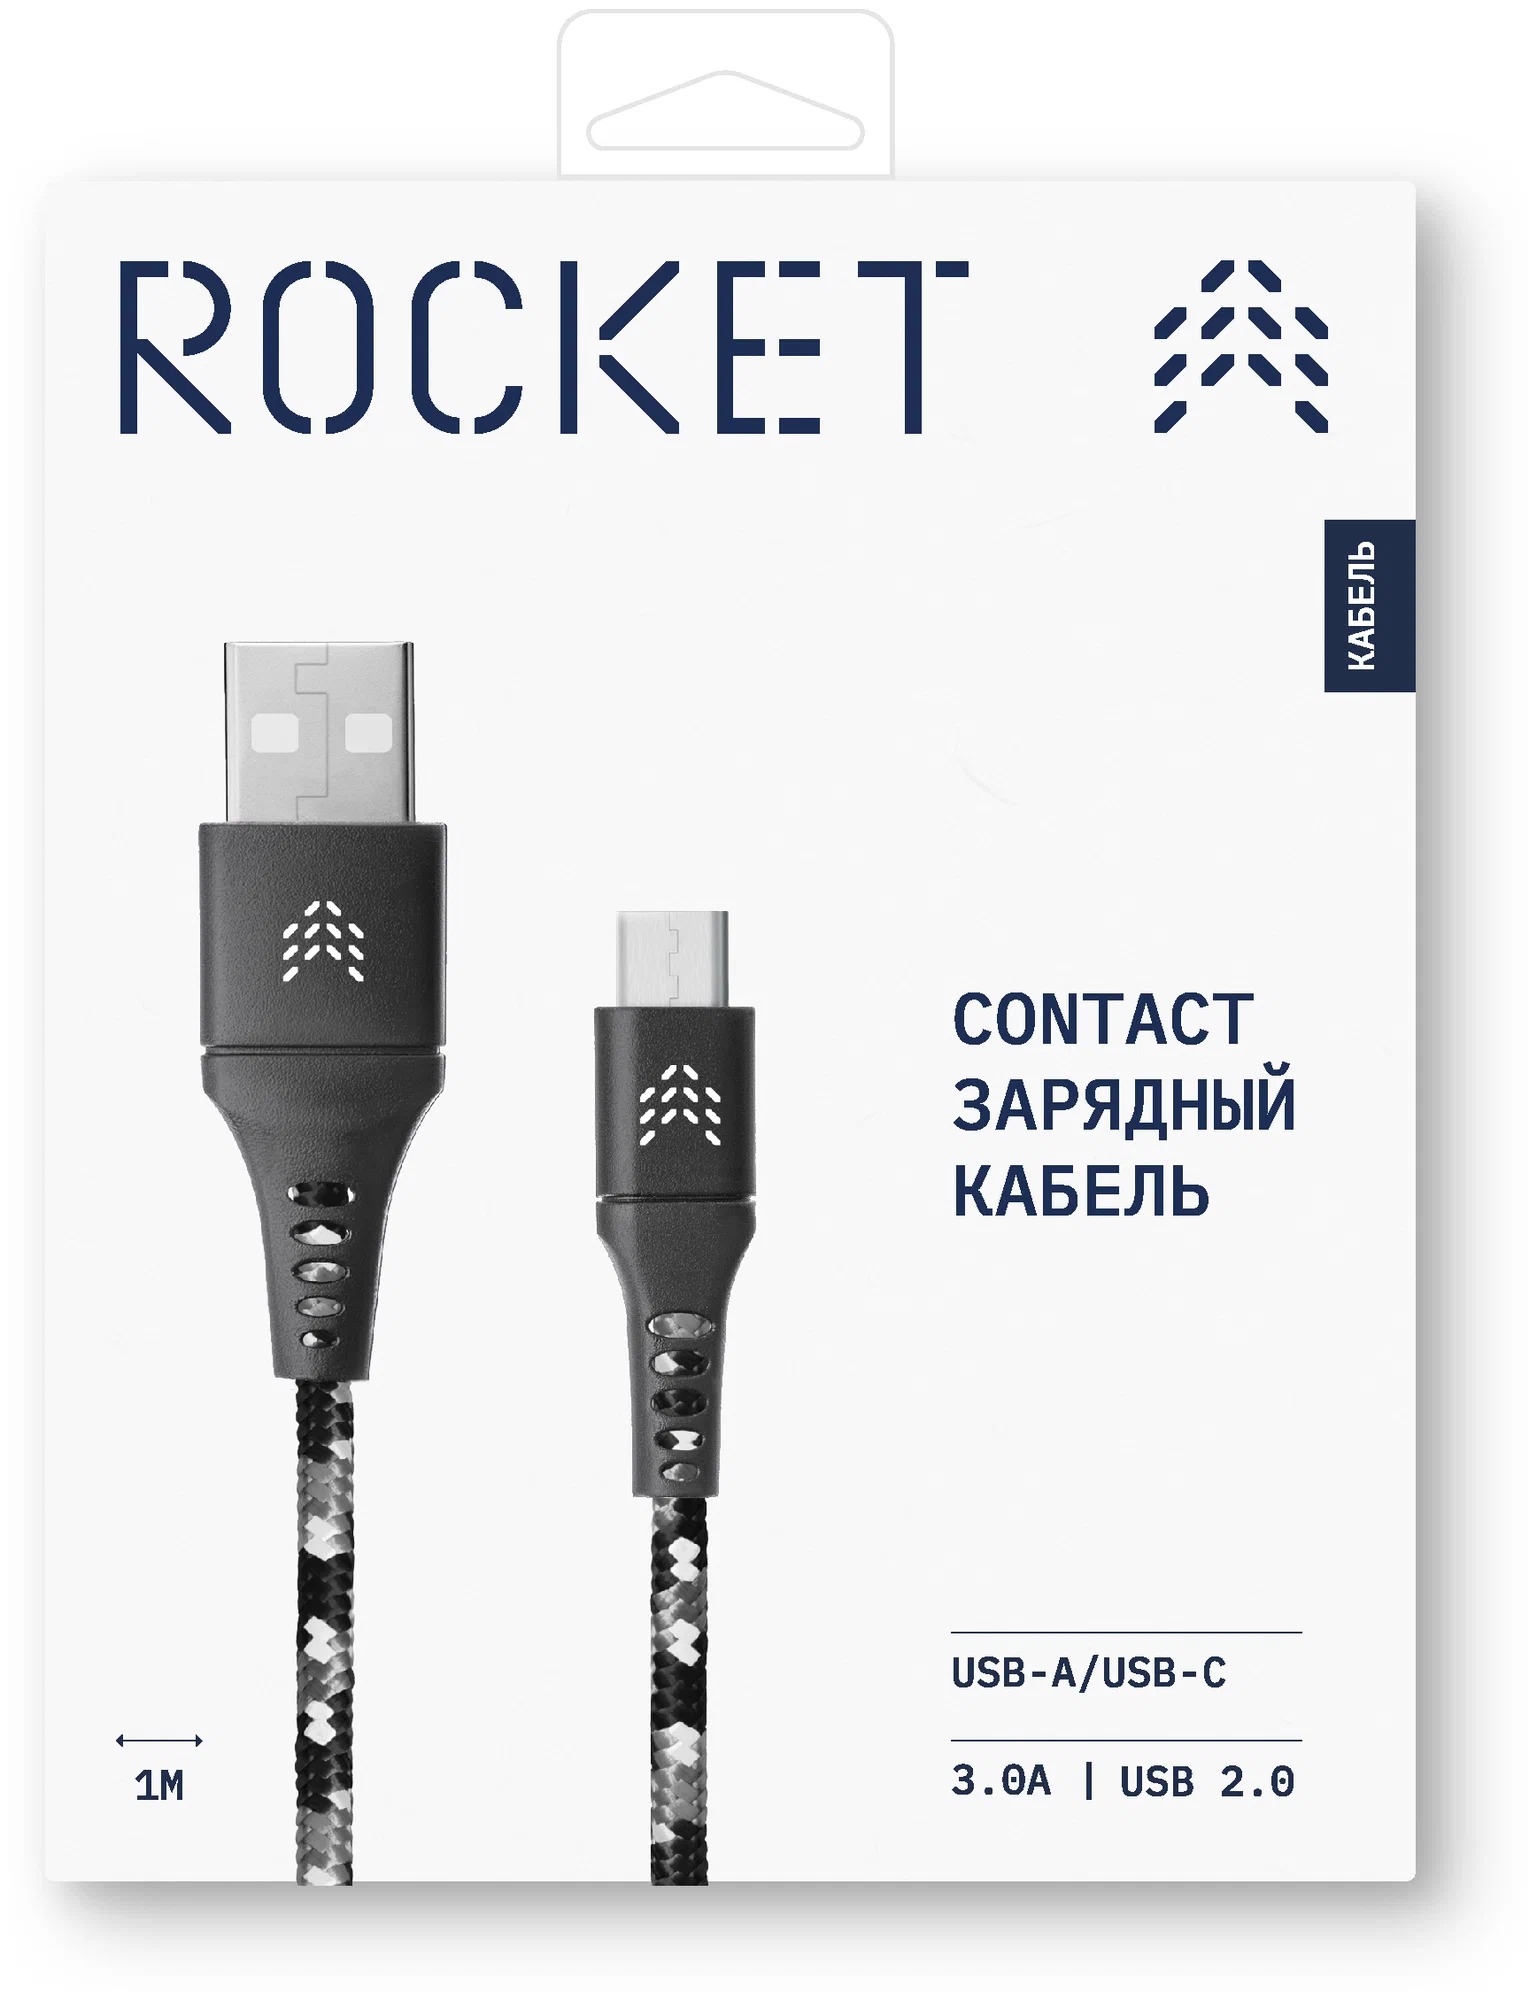 Зарядный кабель ROCKET Contact USB-A/USB-C 1м, тканевая оплётка, чёрно-белый